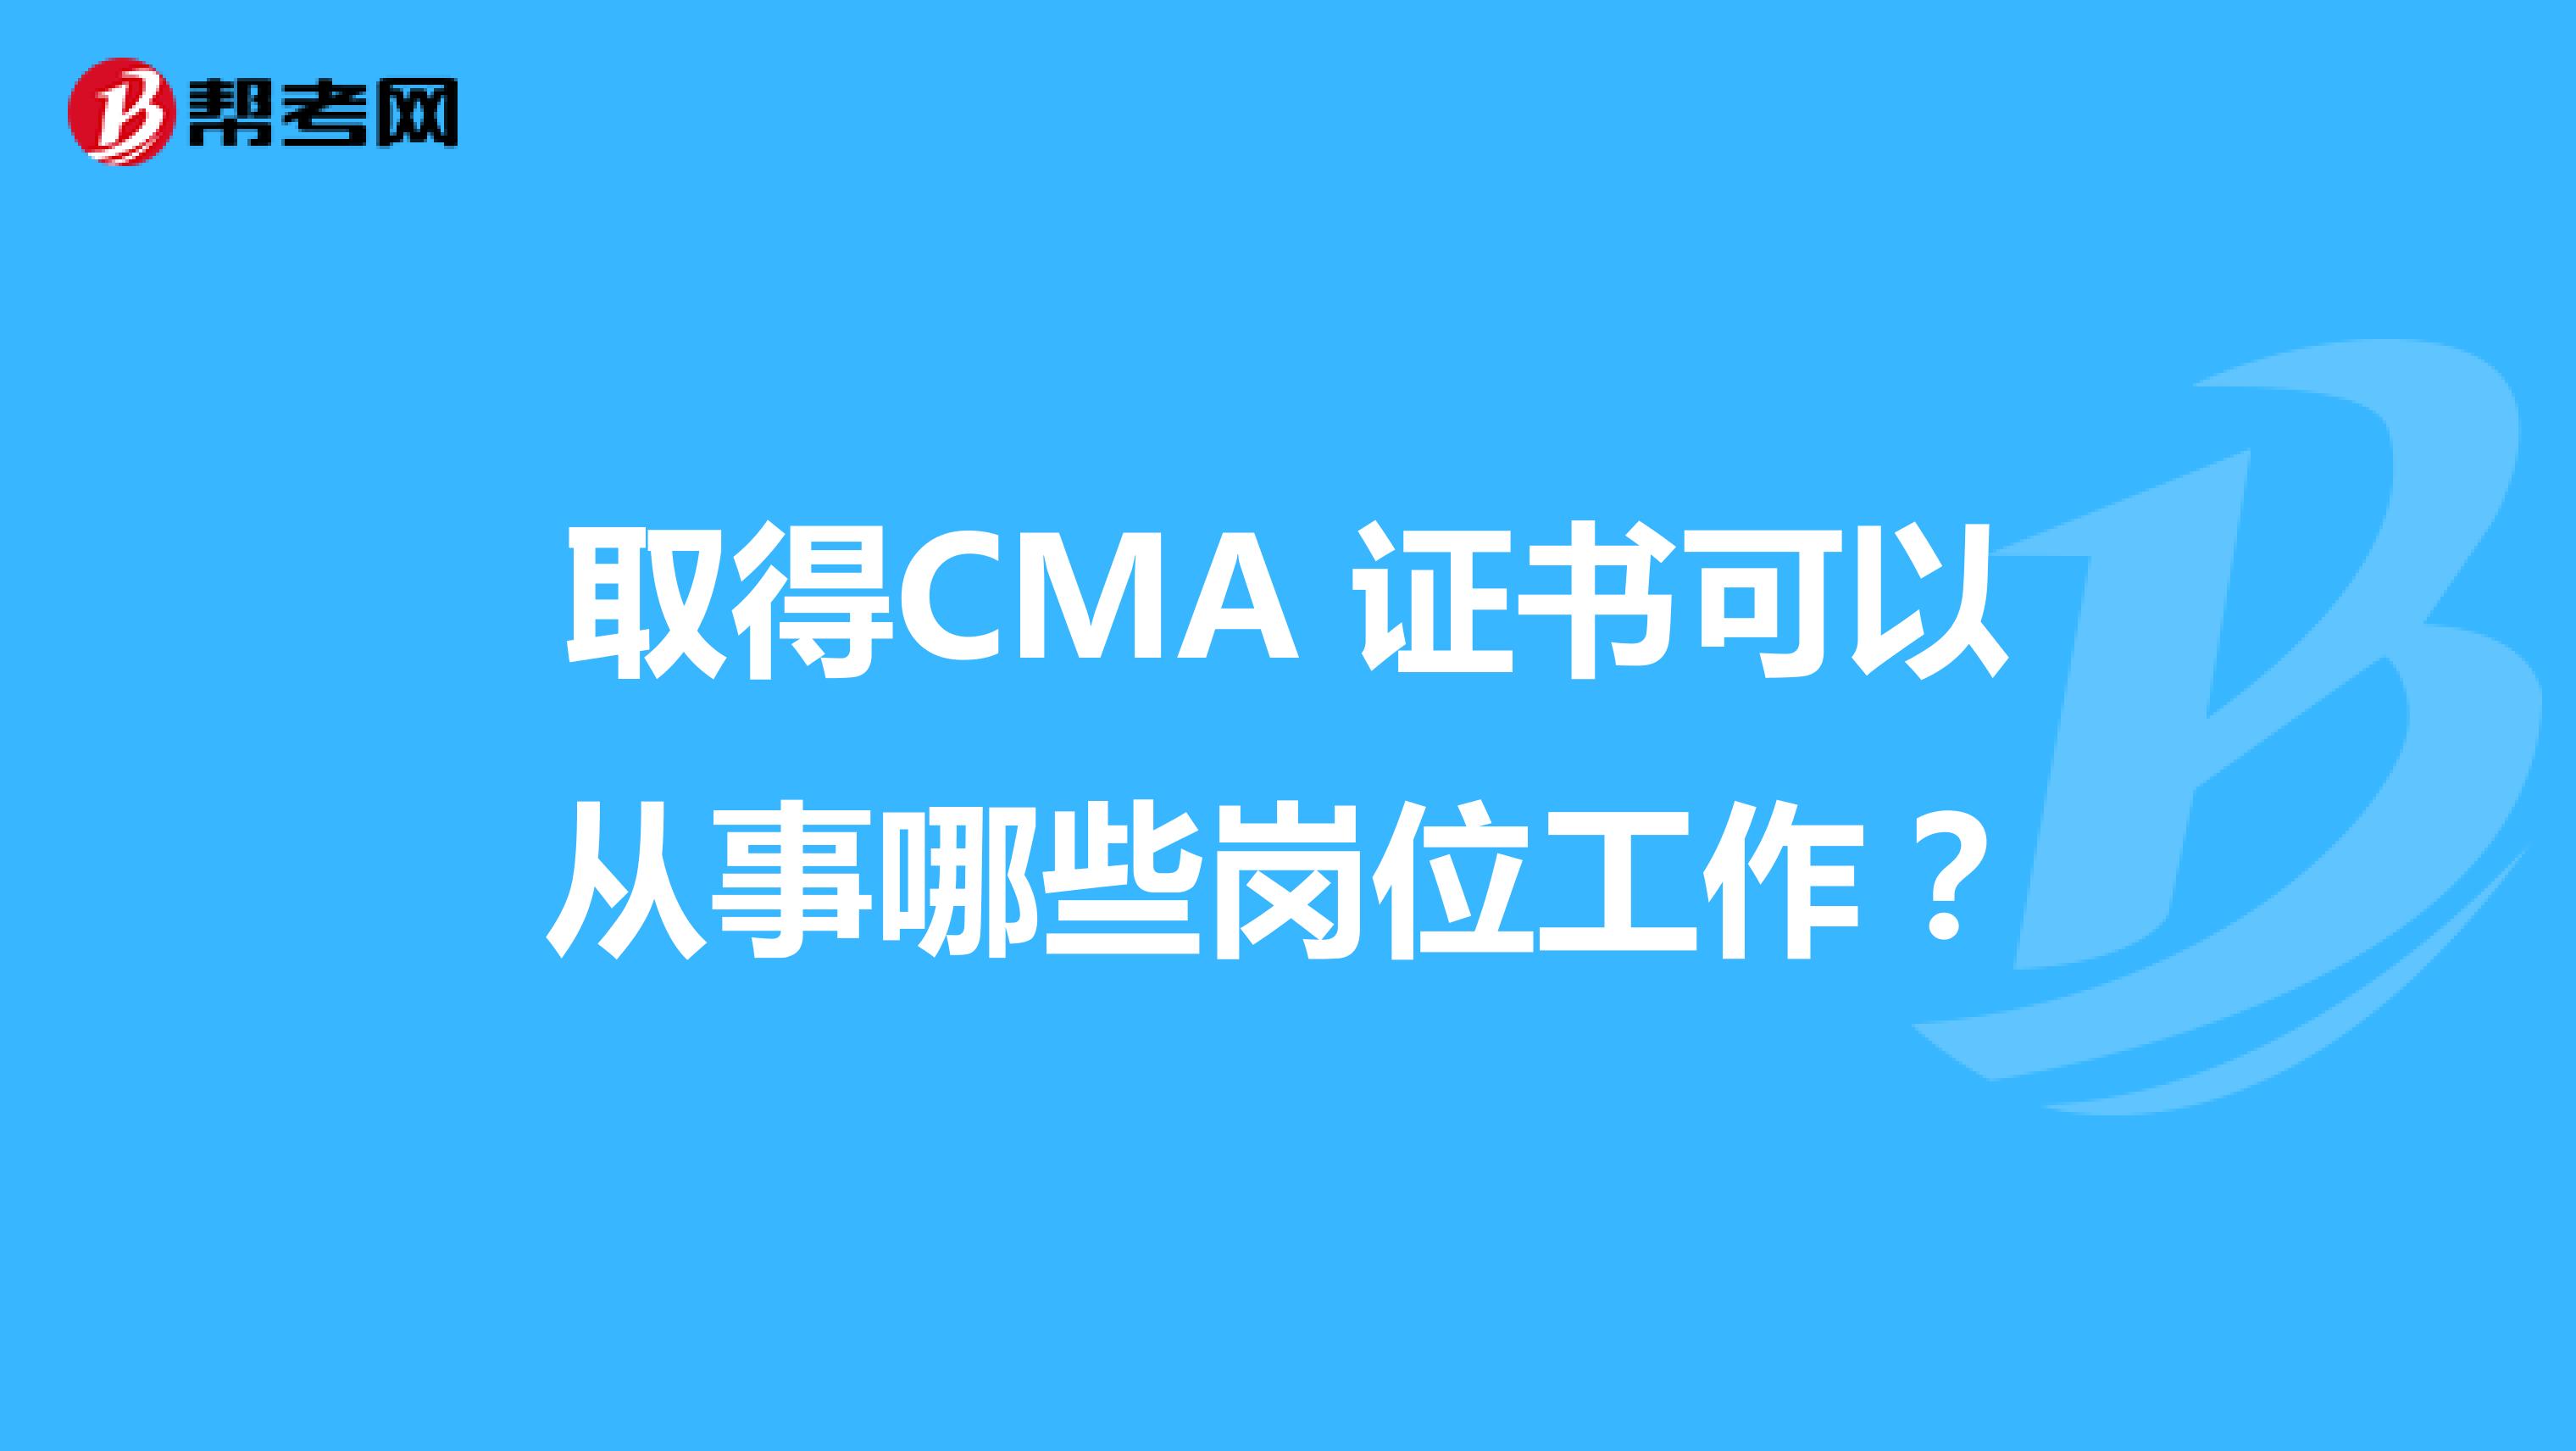 取得CMA 证书可以从事哪些岗位工作？